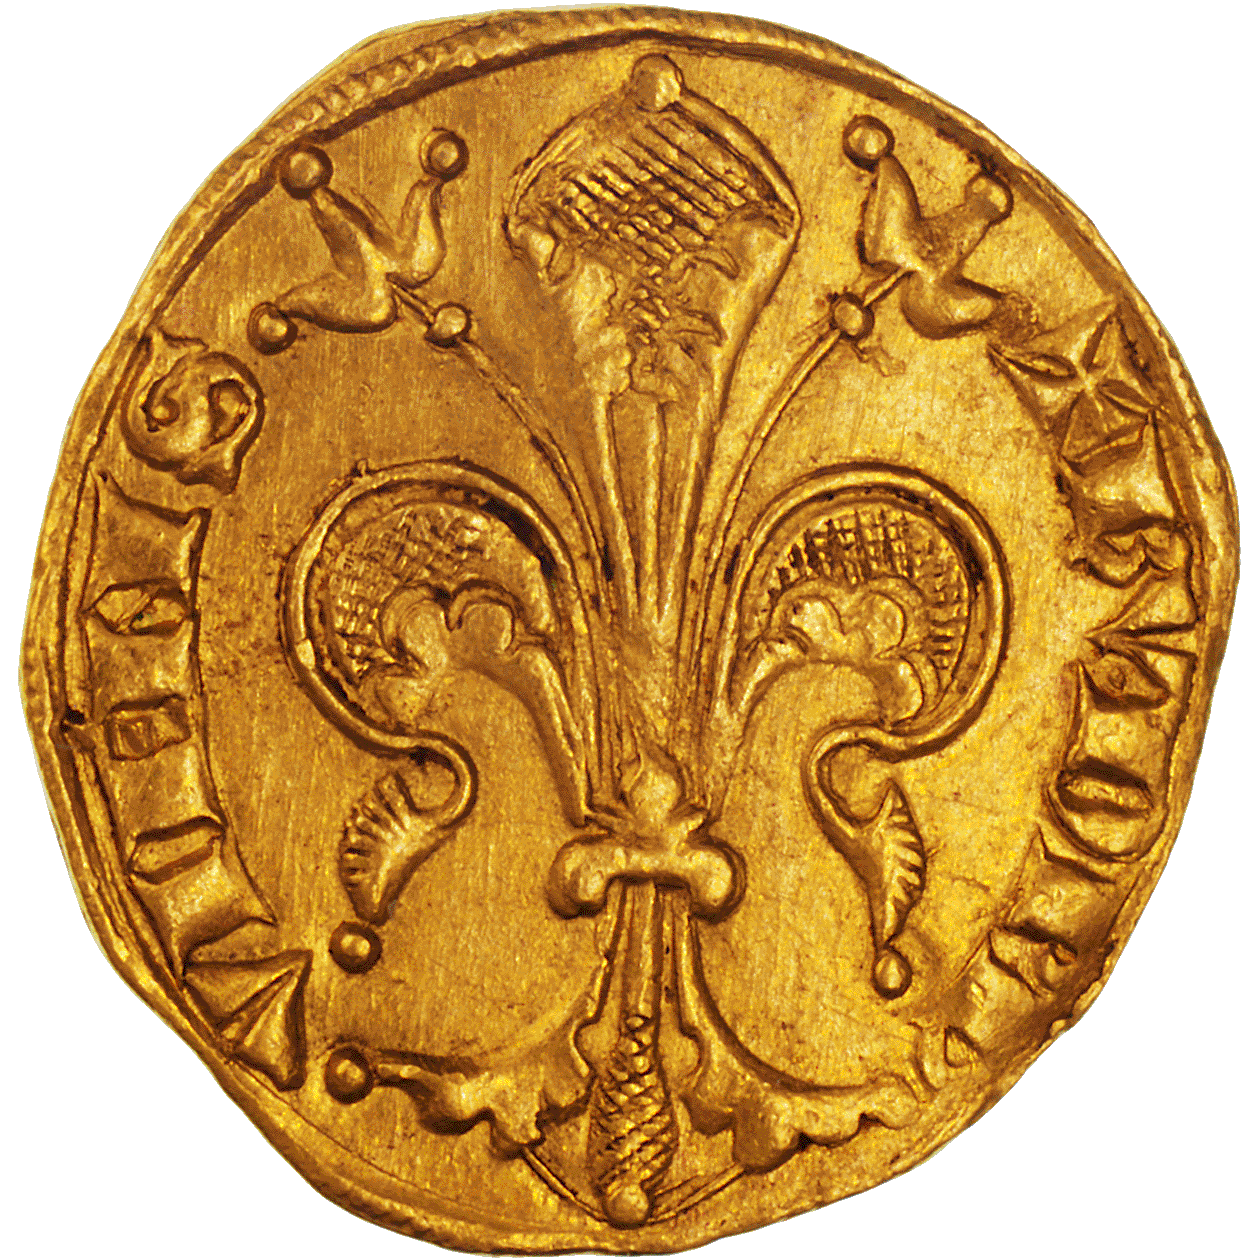 Frankreich, Fürstentum Dauphiné, Humbert II., Florin d'or (obverse)